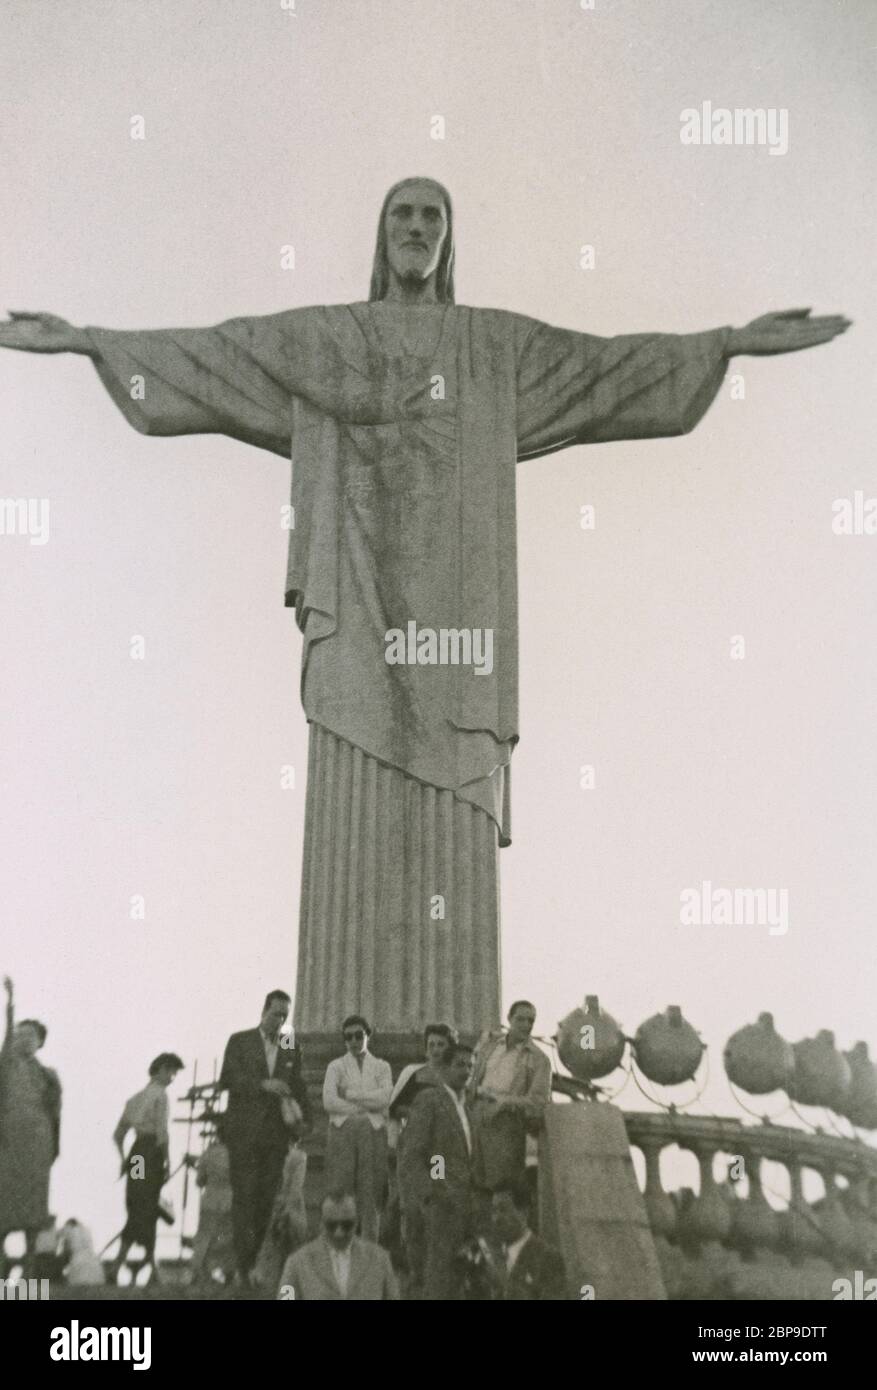 Vintage-Foto, Christus der Erlöser Statue in Corcovado, Rio de Janeiro, Brasilien. Foto aufgenommen am 12. Und 13. Juli 1955 von einem Passagier, der von einem Kreuzfahrtschiff entbellen konnte. QUELLE: ORIGINALFOTO Stockfoto